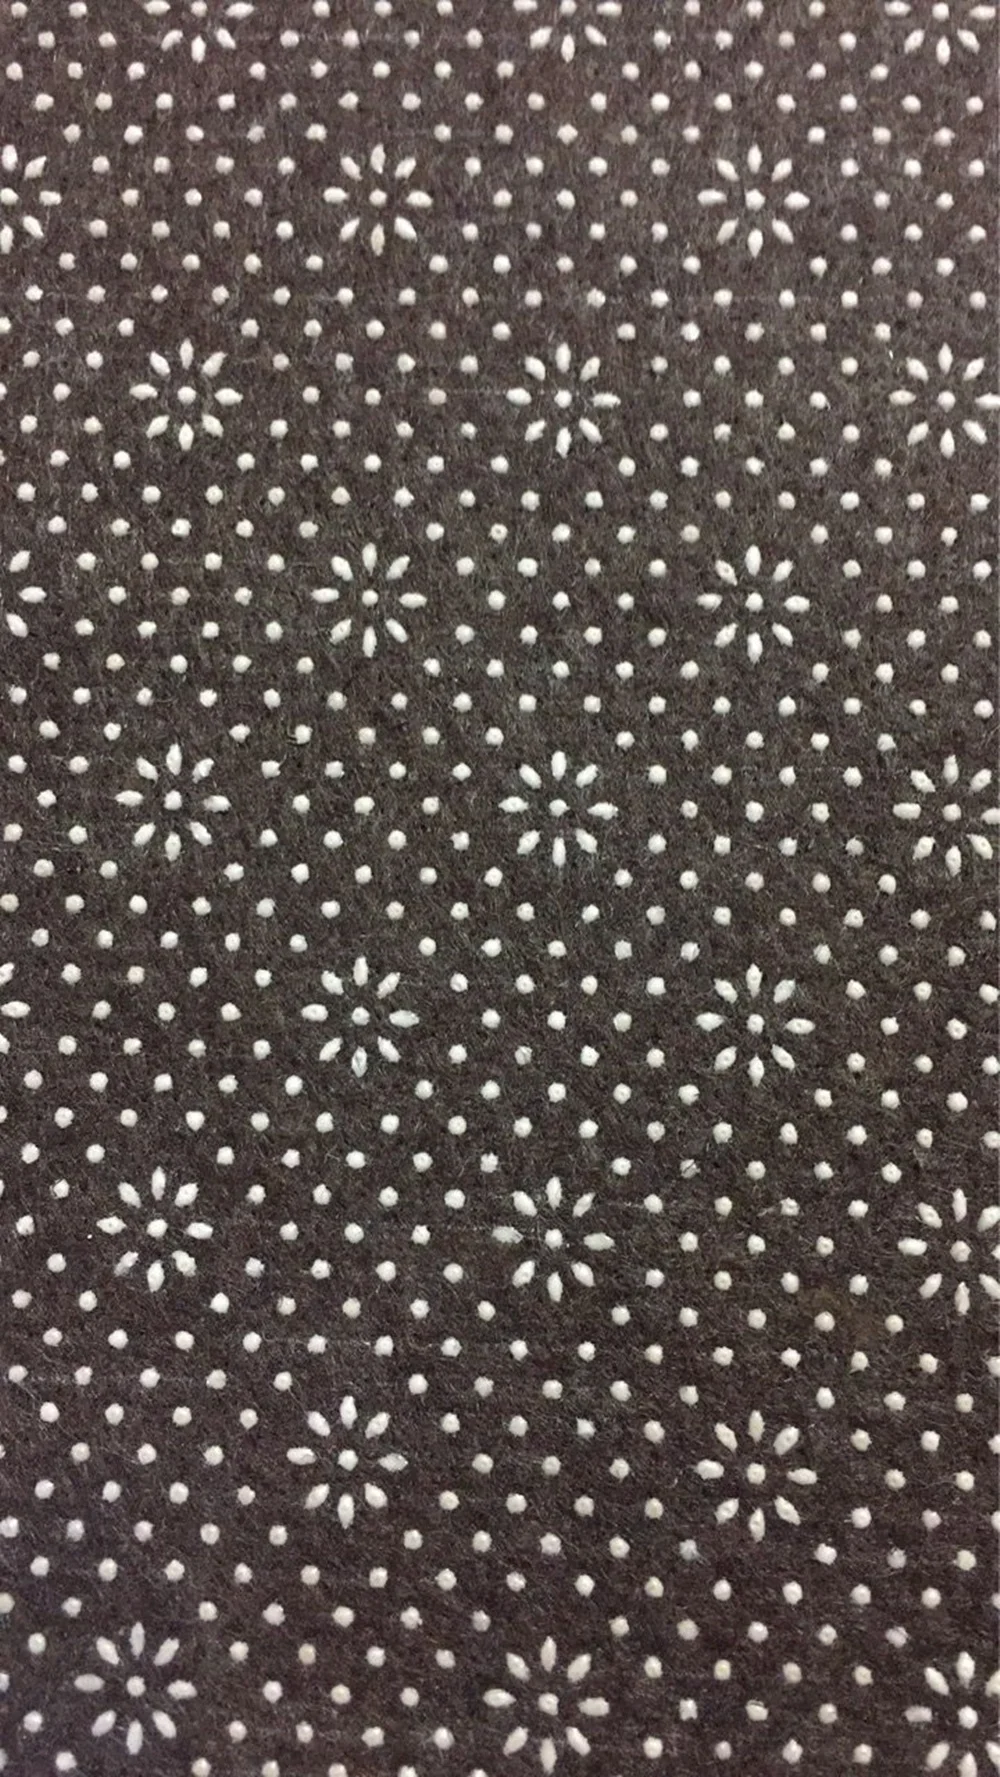 Геометрический принт ковер современный коврик для прихожей кухонные коврики черный ковер коврик для йоги фланелевый ковер большой коврик для гостиной